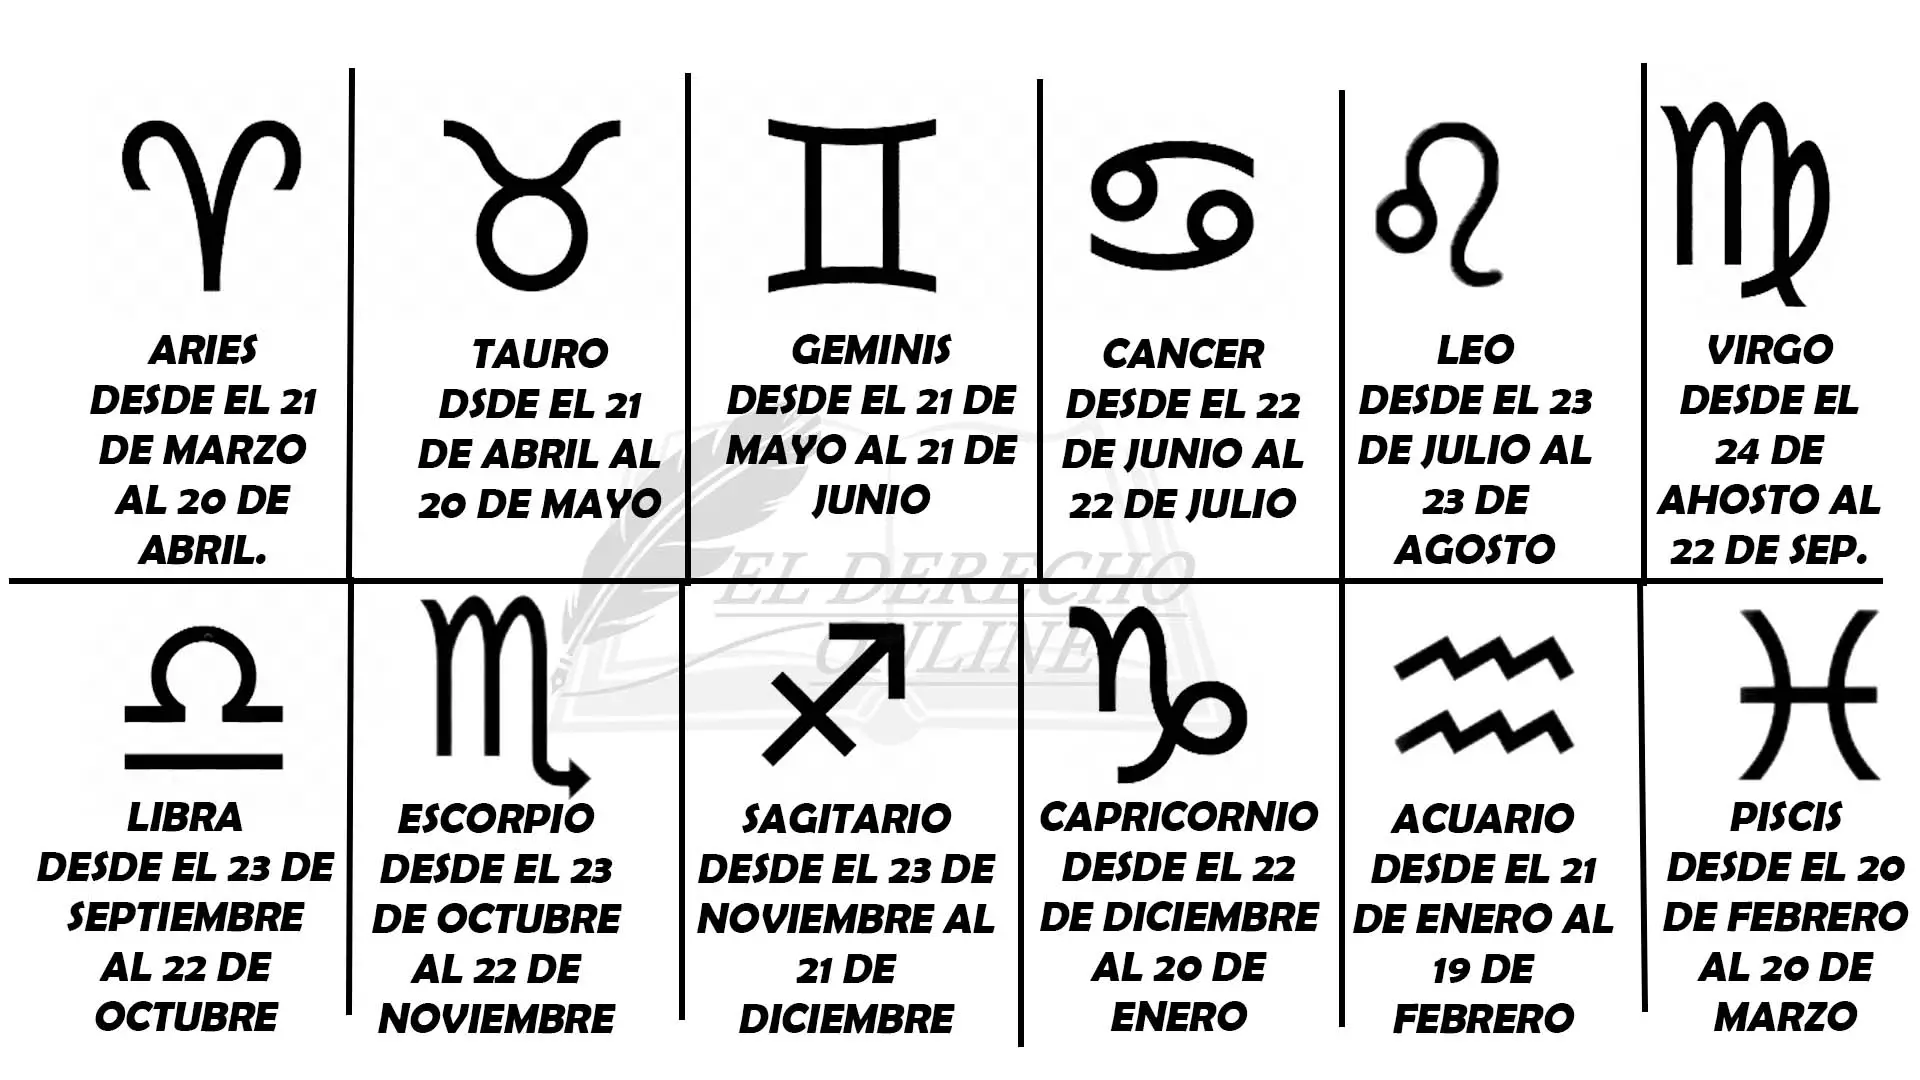 Compatibilidad de signos zodiacales según fechas de nacimiento